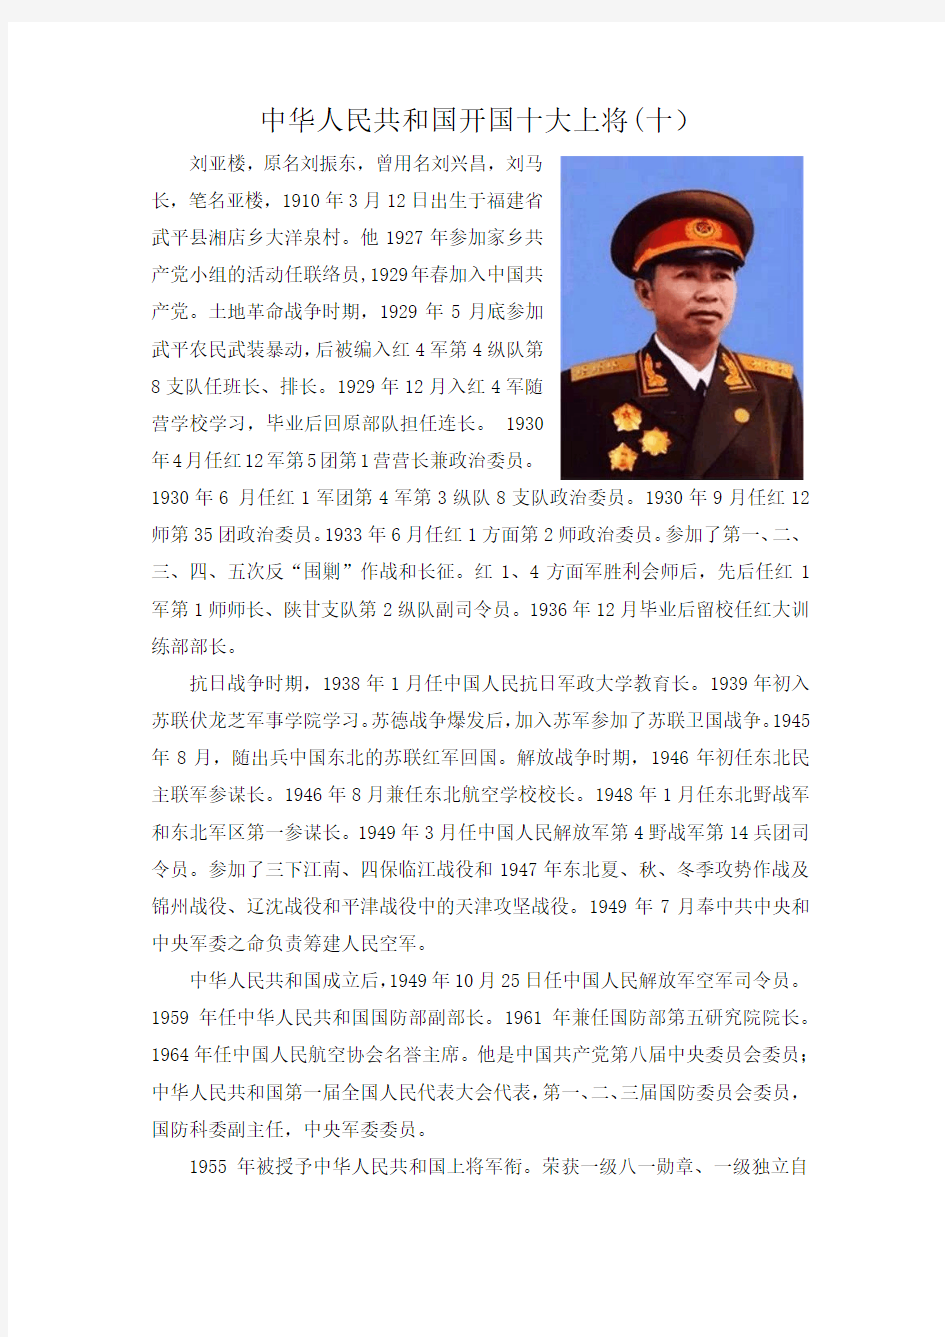 中华人民共和国开国十大上将(十)